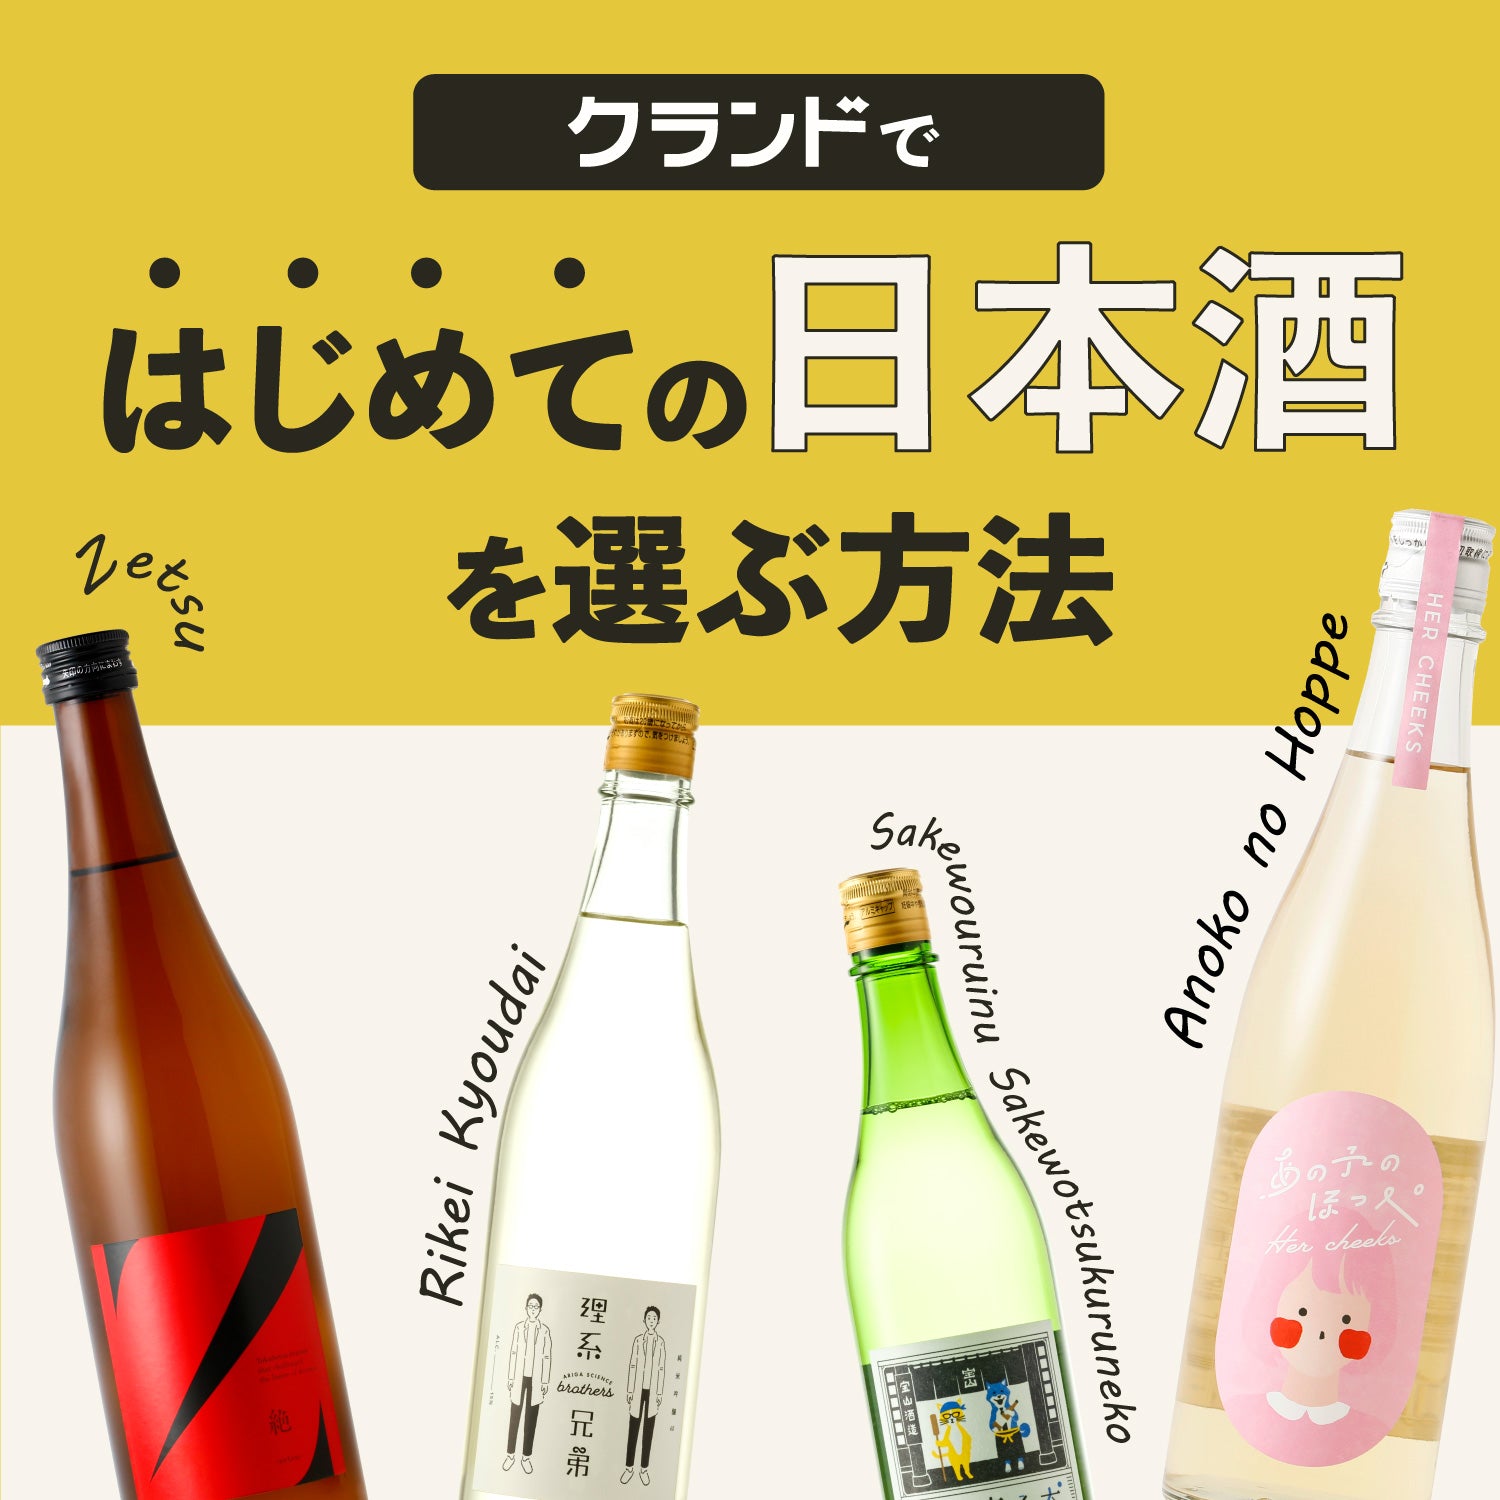 クランドではじめての日本酒を選ぶ方法